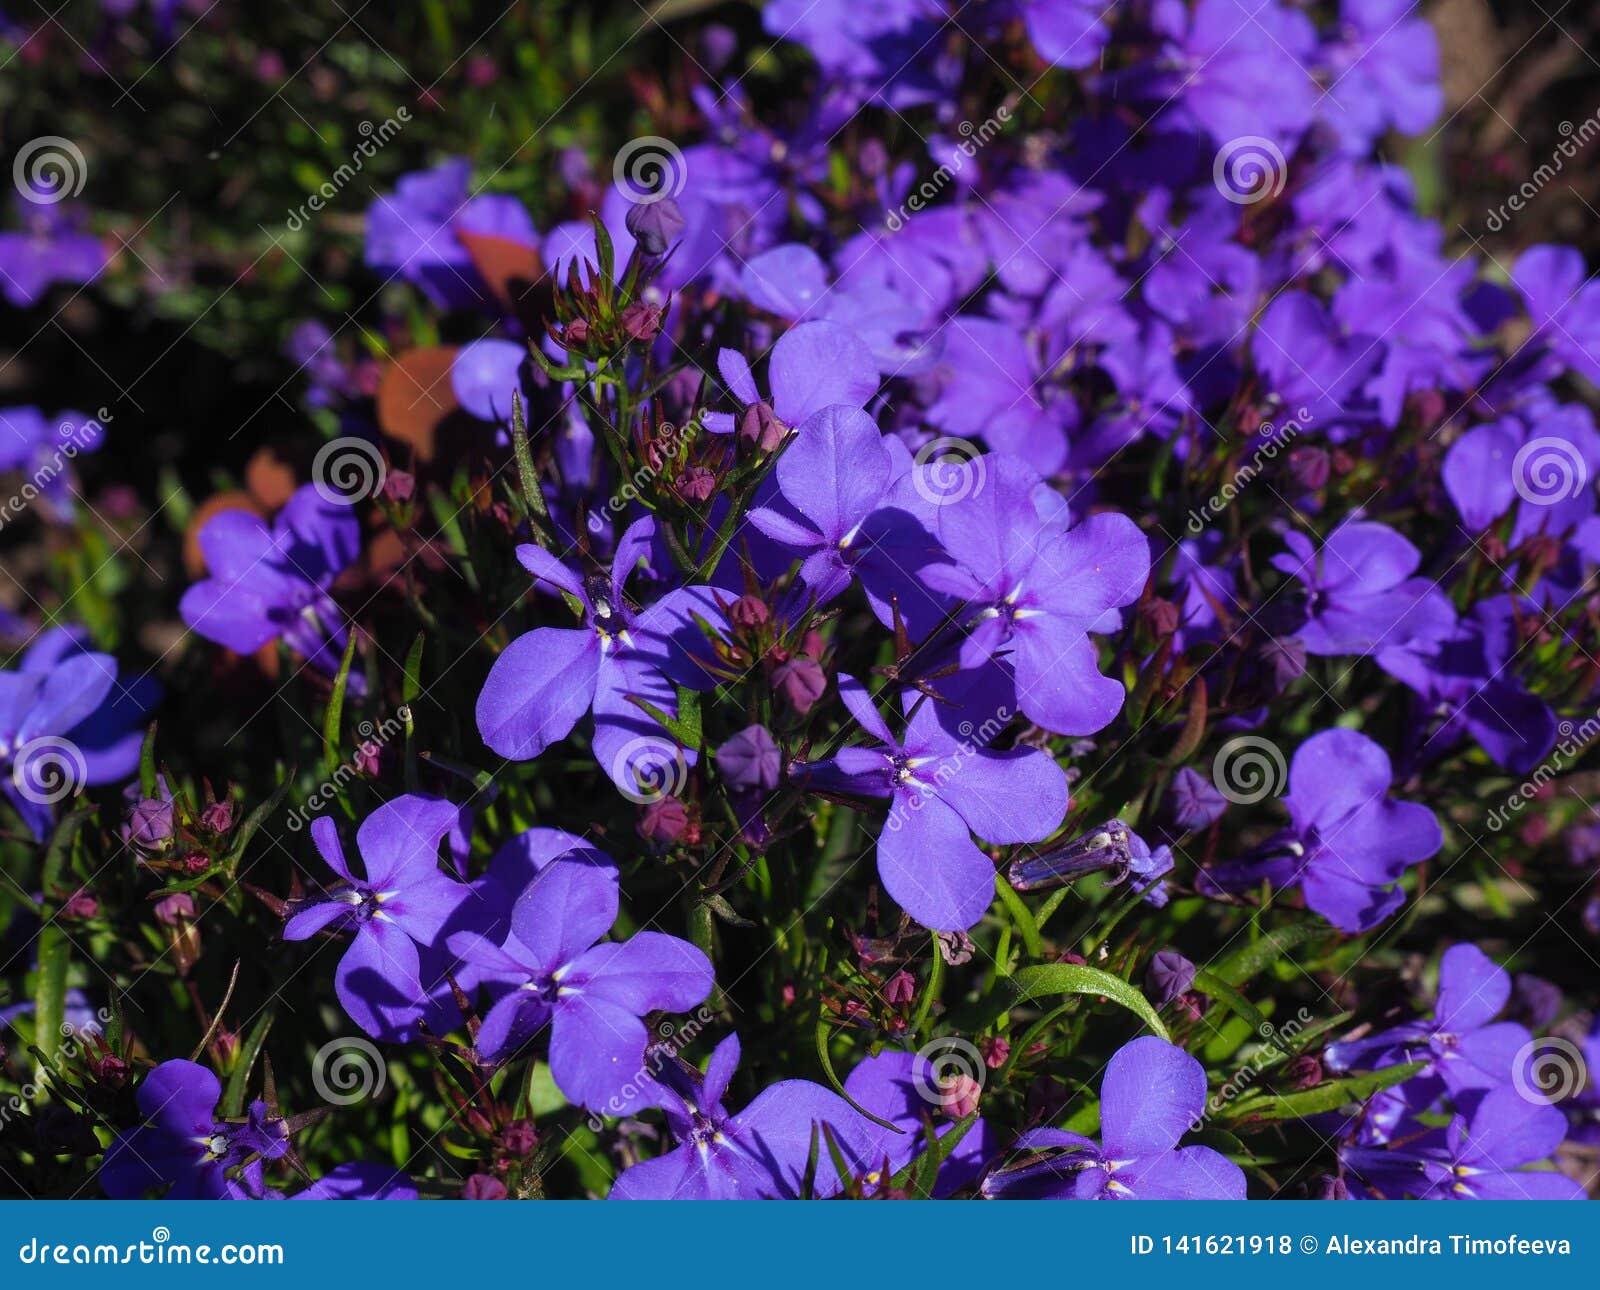 Blue Trailing Lobelia Flowers Close Up Shot Stock Photo - Image of ...